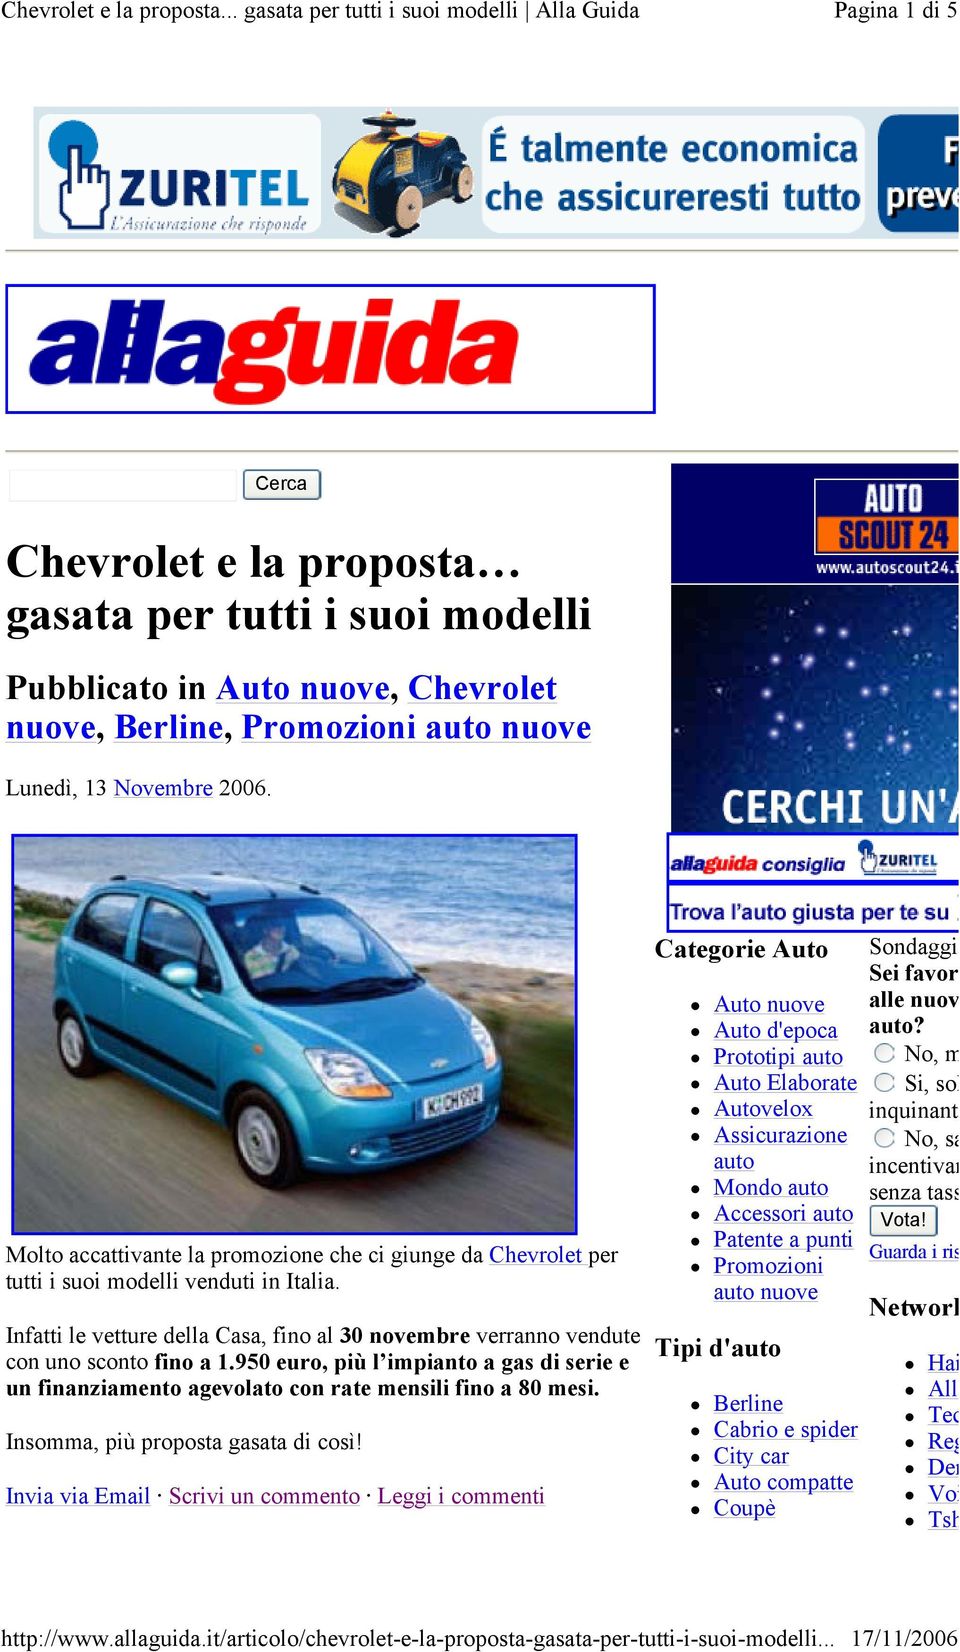 Cerca Molto accattivante la mozione che ci giunge da Chevrolet per tutti i suoi modelli venduti in Italia. Infatti le vetture della Casa, fino al 30 novembre verranno vendute con uno sconto fino a 1.